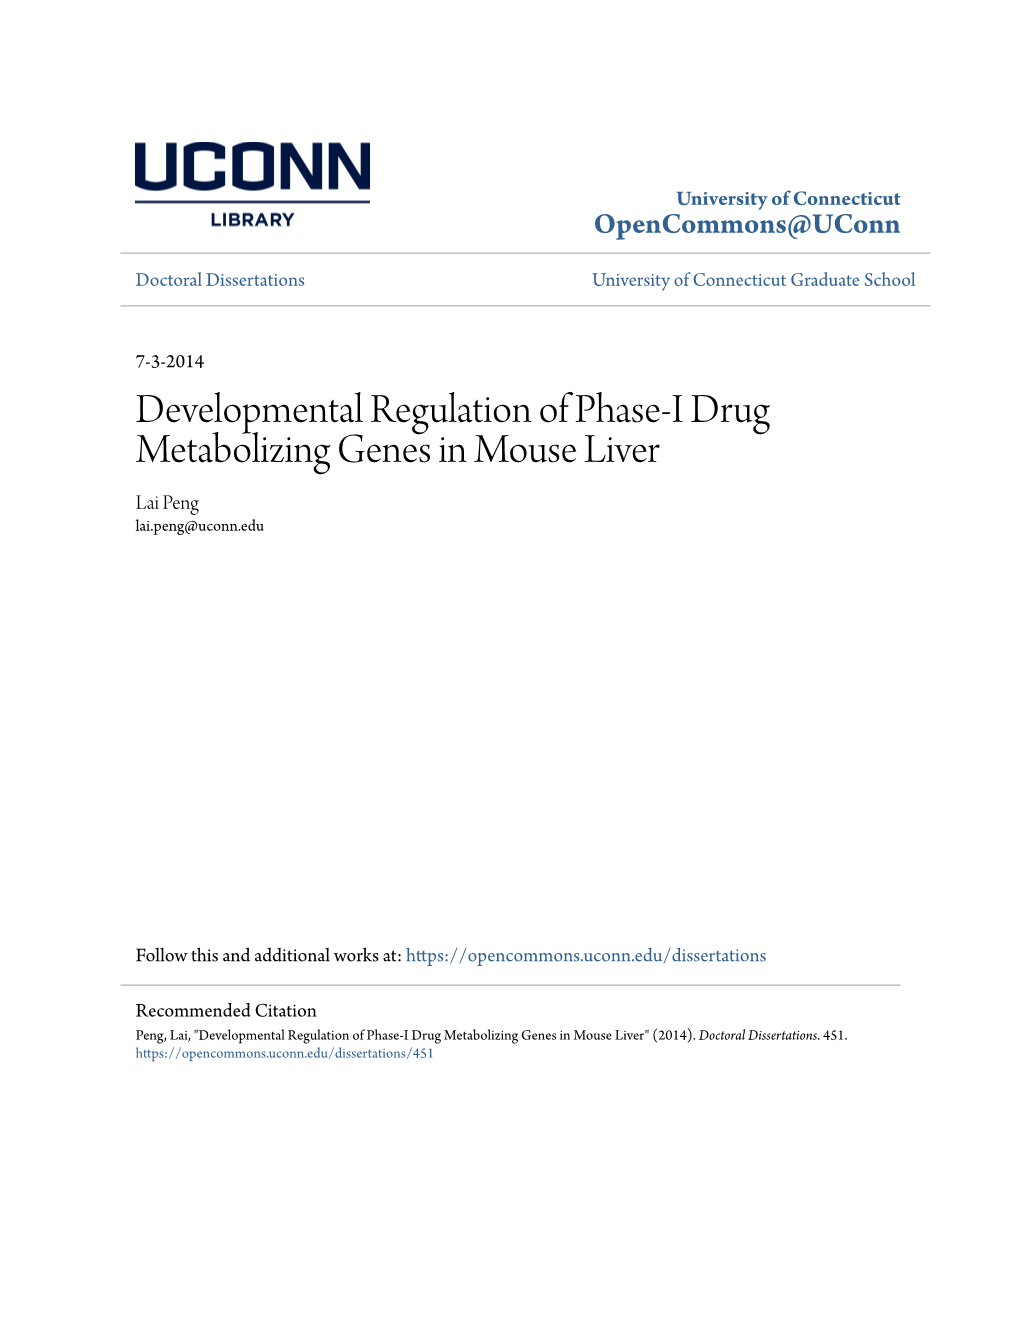 Developmental Regulation of Phase-I Drug Metabolizing Genes in Mouse Liver Lai Peng Lai.Peng@Uconn.Edu